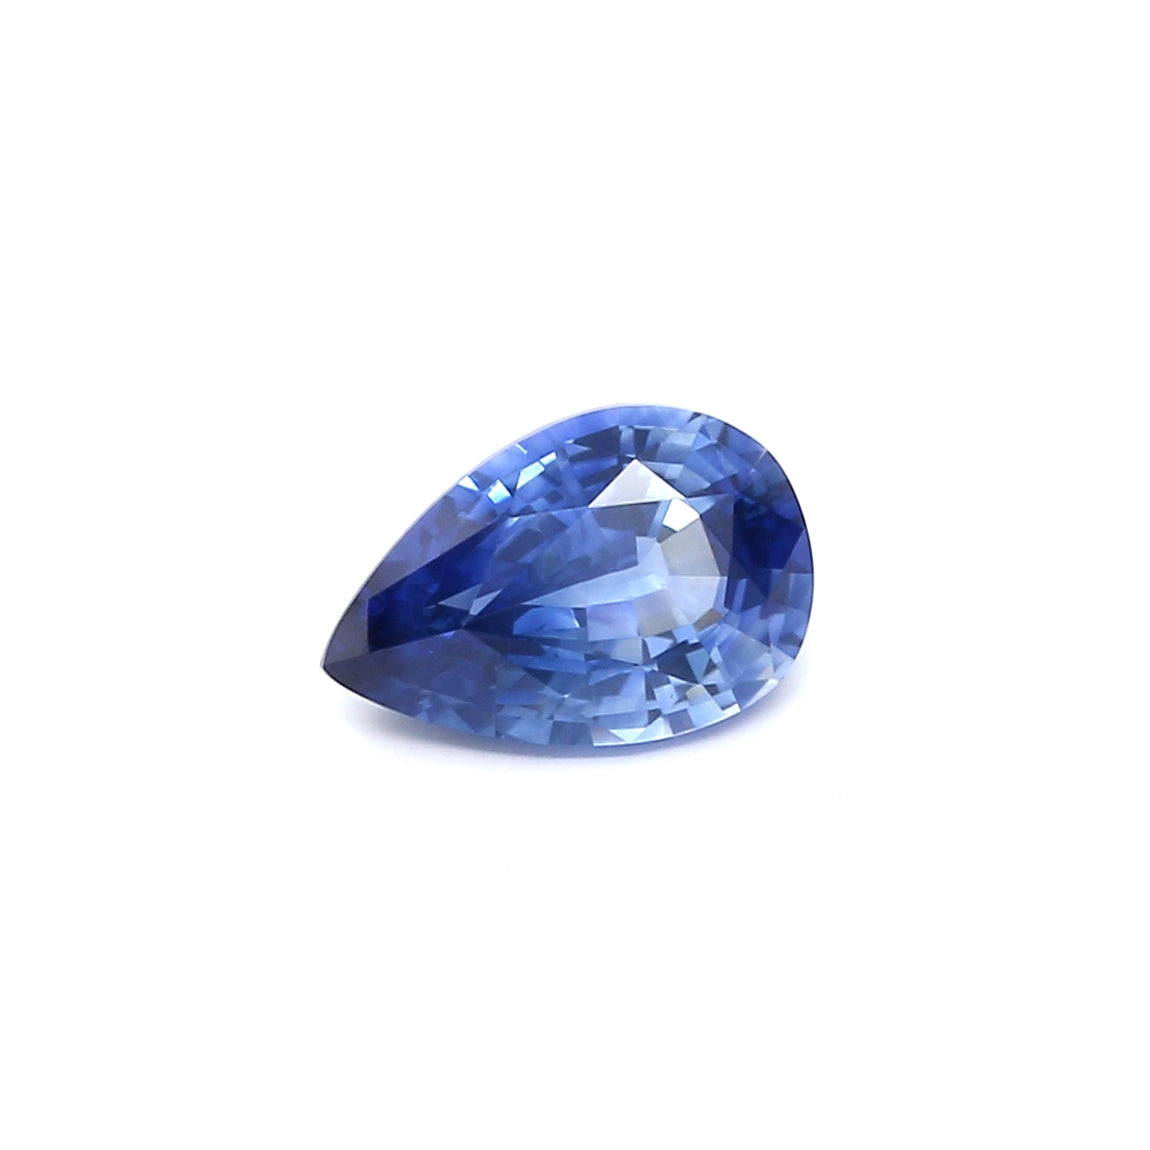 1.55ct Pear Shape Sapphire, Heated, Sri Lanka - 8.93 x 5.93 x 3.85mm